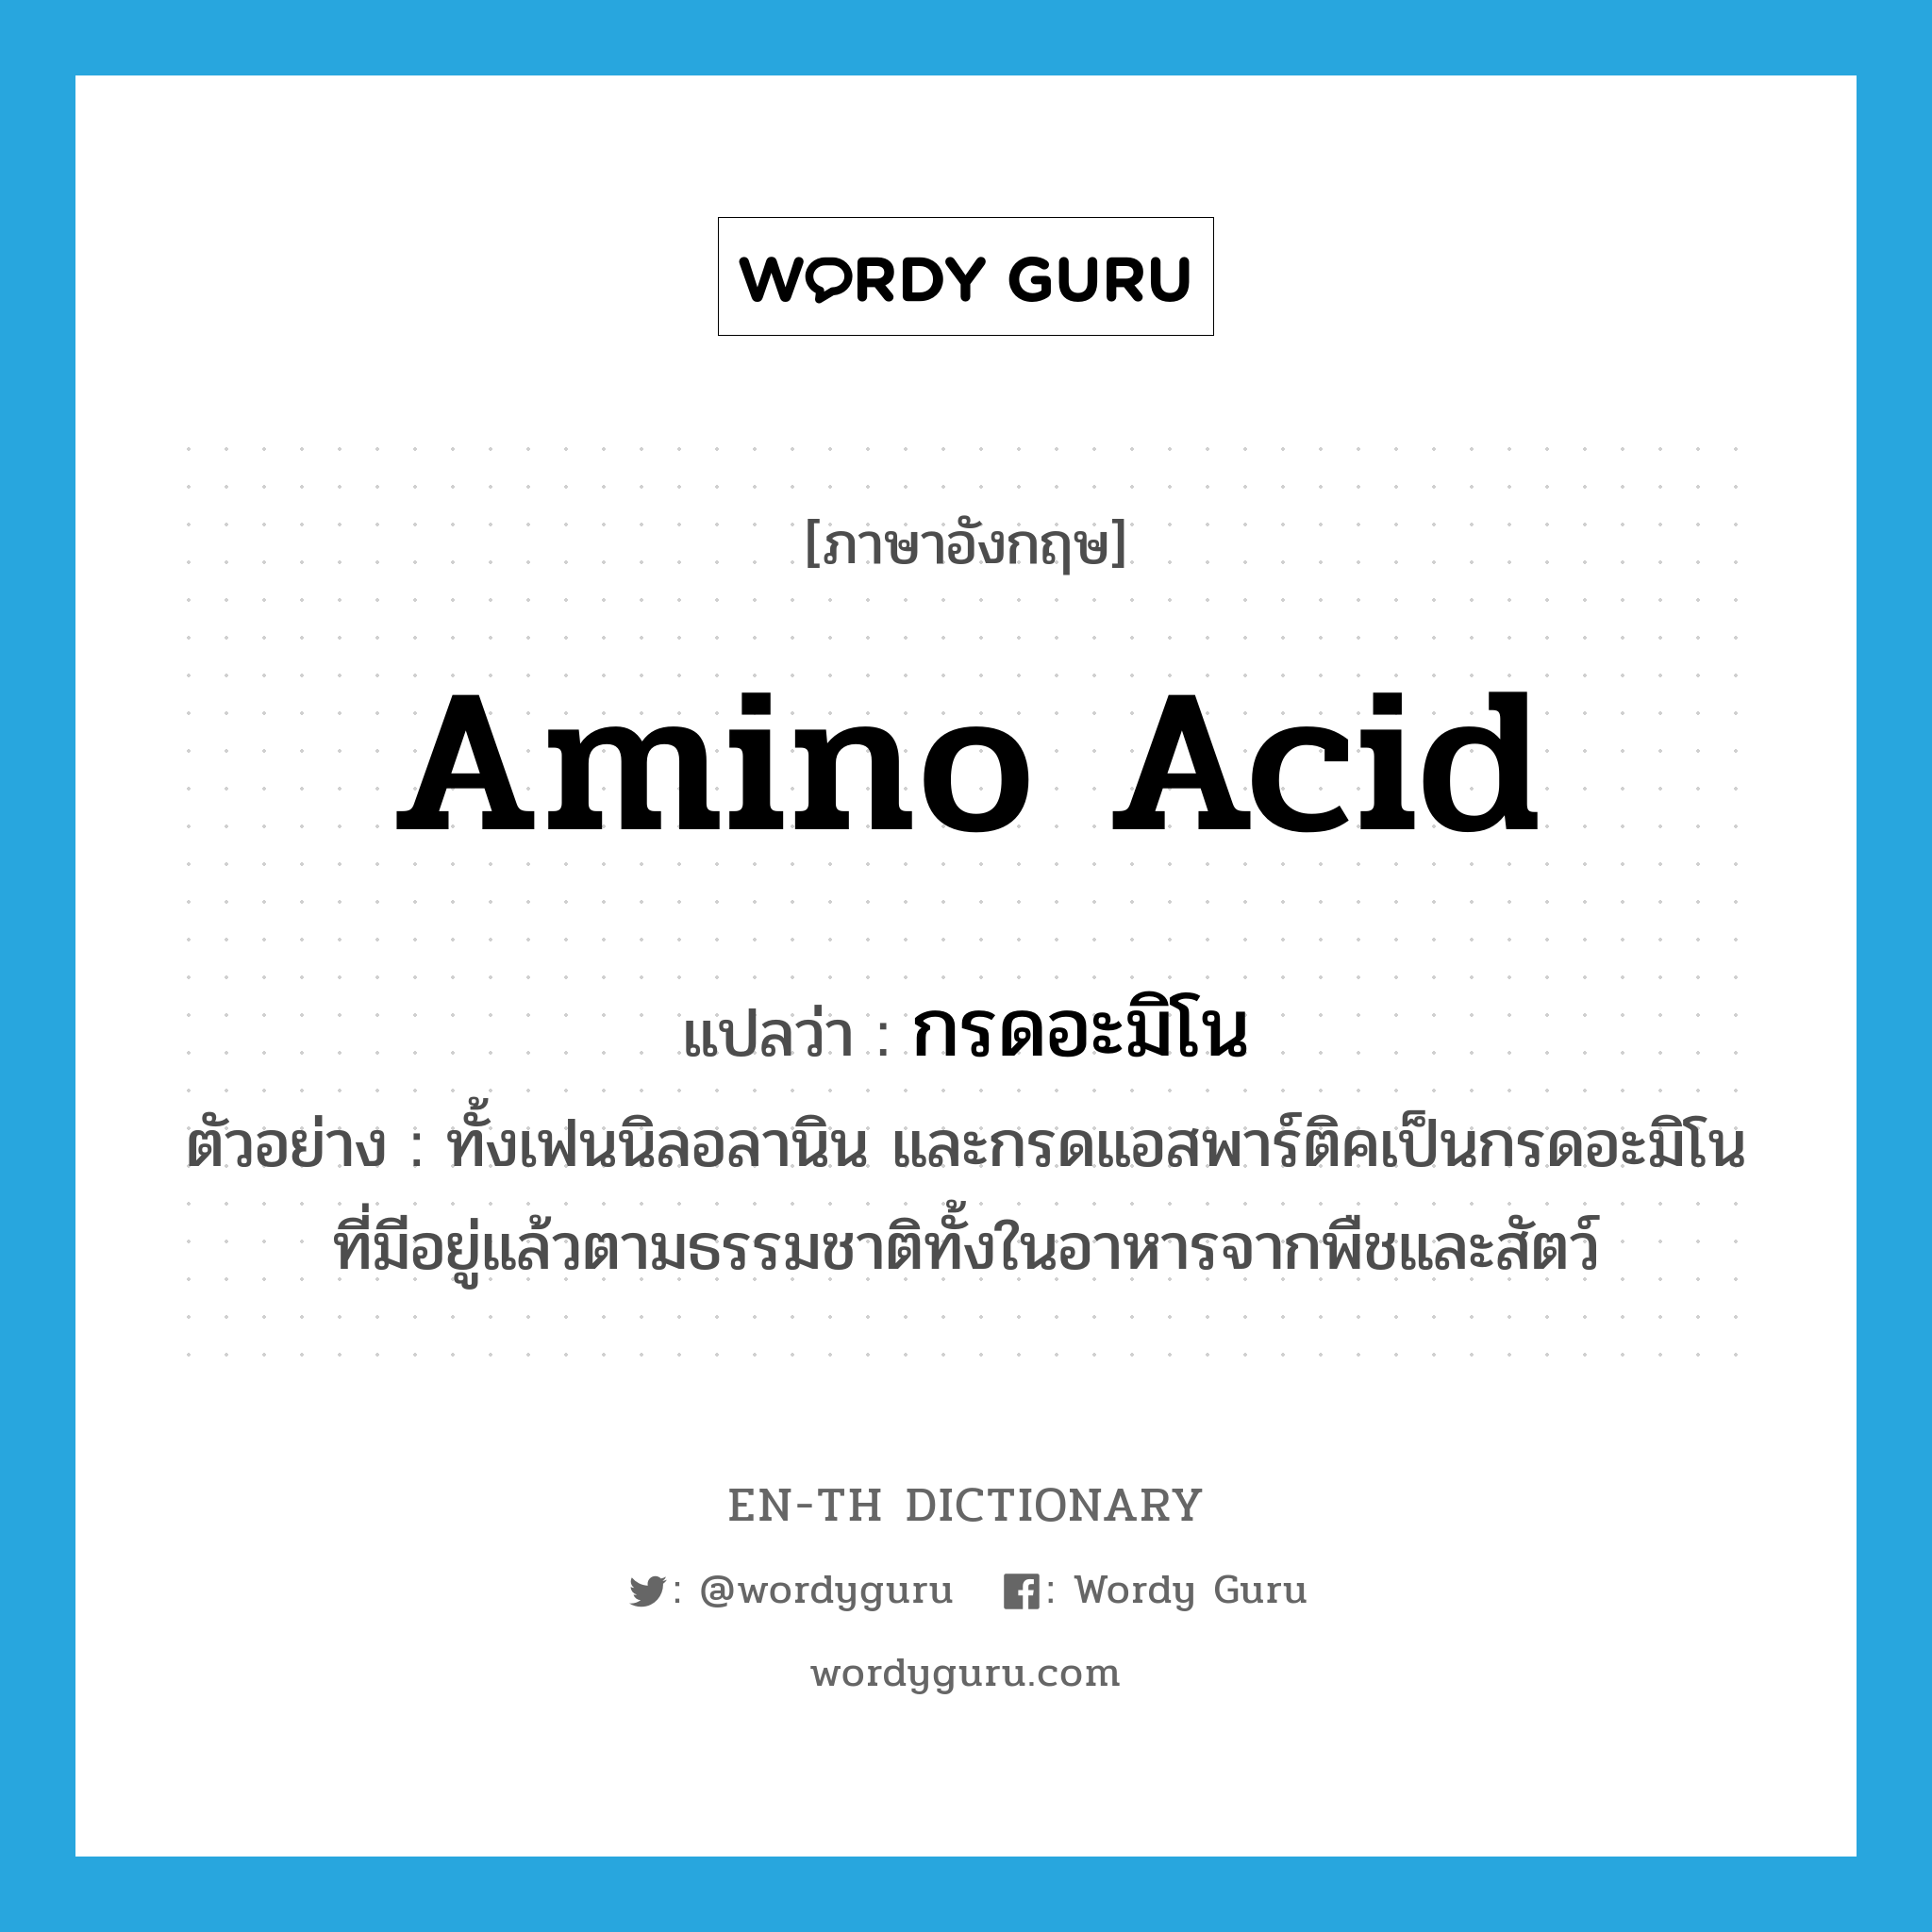 amino acid แปลว่า?, คำศัพท์ภาษาอังกฤษ amino acid แปลว่า กรดอะมิโน ประเภท N ตัวอย่าง ทั้งเฟนนิลอลานิน และกรดแอสพาร์ติคเป็นกรดอะมิโนที่มีอยู่แล้วตามธรรมชาติทั้งในอาหารจากพืชและสัตว์ หมวด N